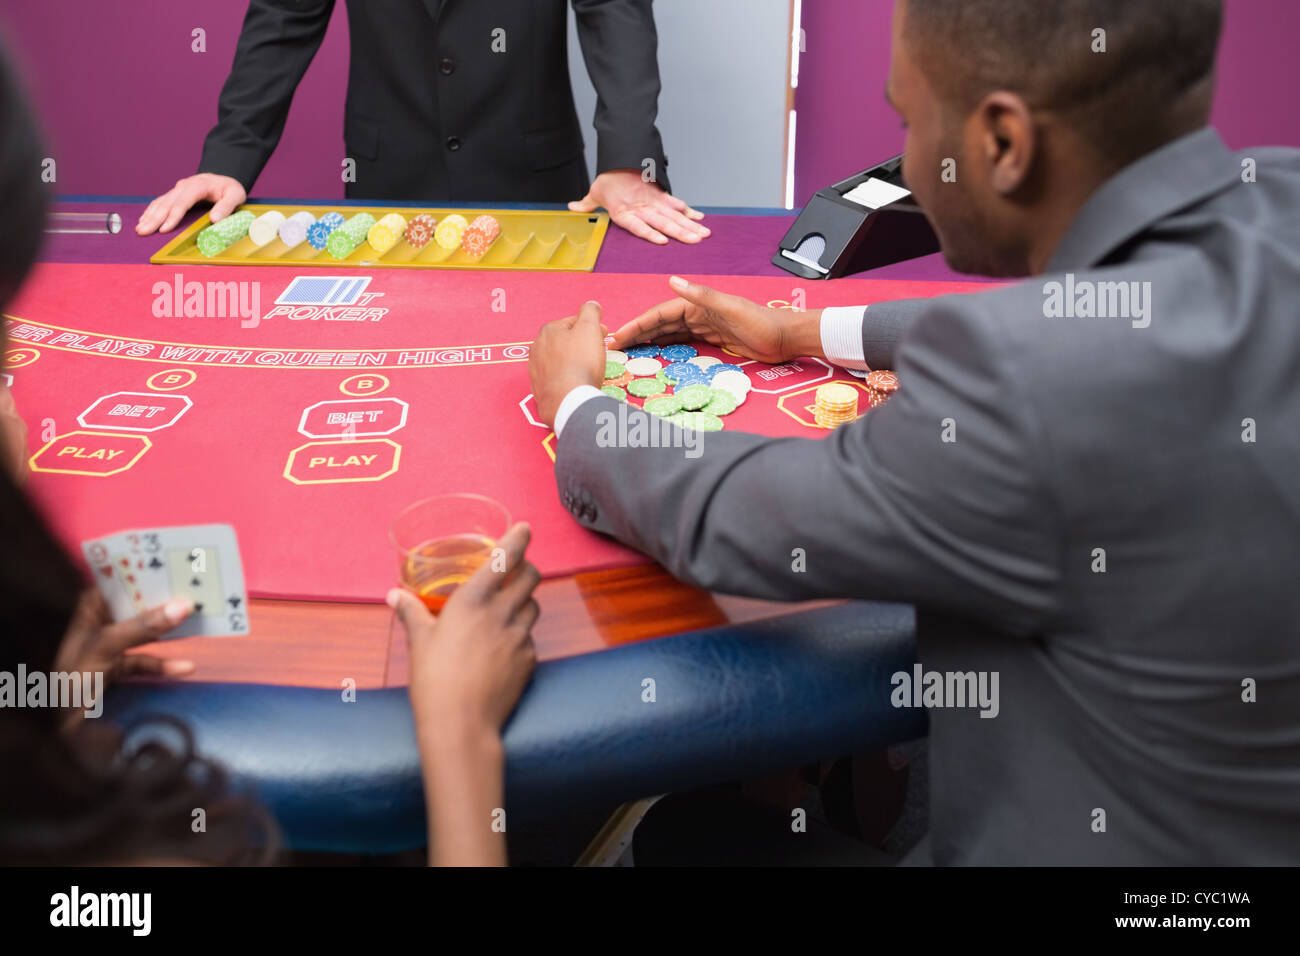 Man grabbing chips at poker table Stock Photo